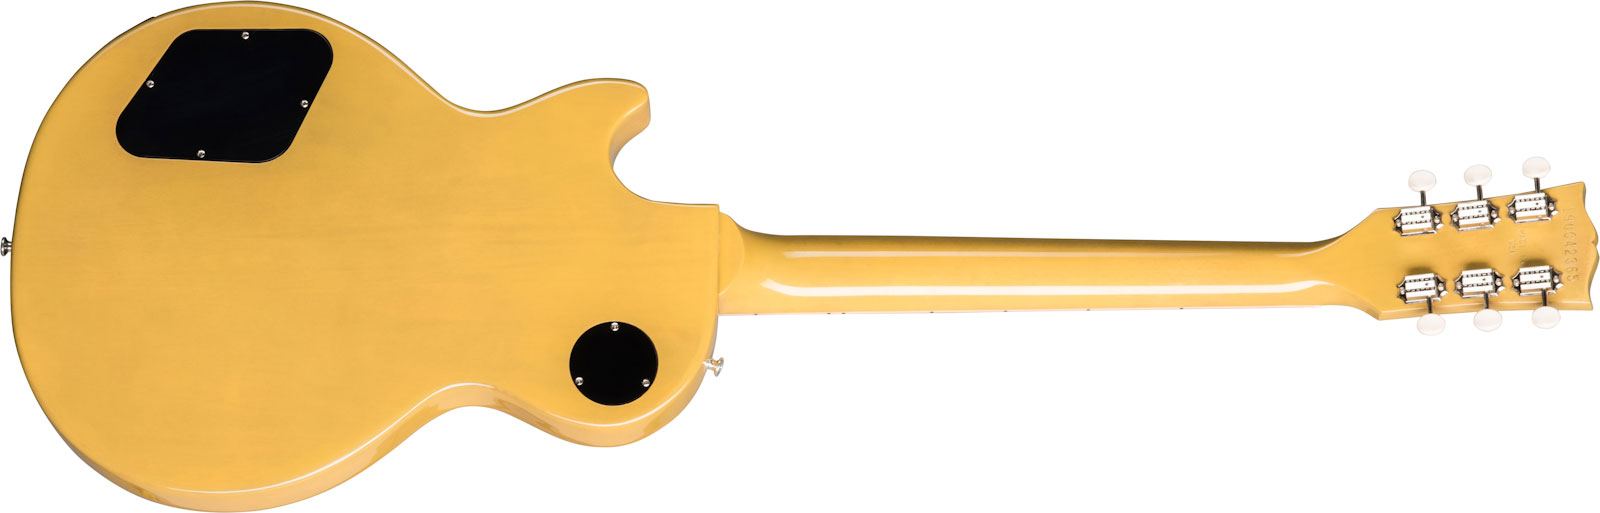 Gibson Les Paul Special Original 2p90 Ht Rw - Tv Yellow - Guitare Électrique Single Cut - Variation 1